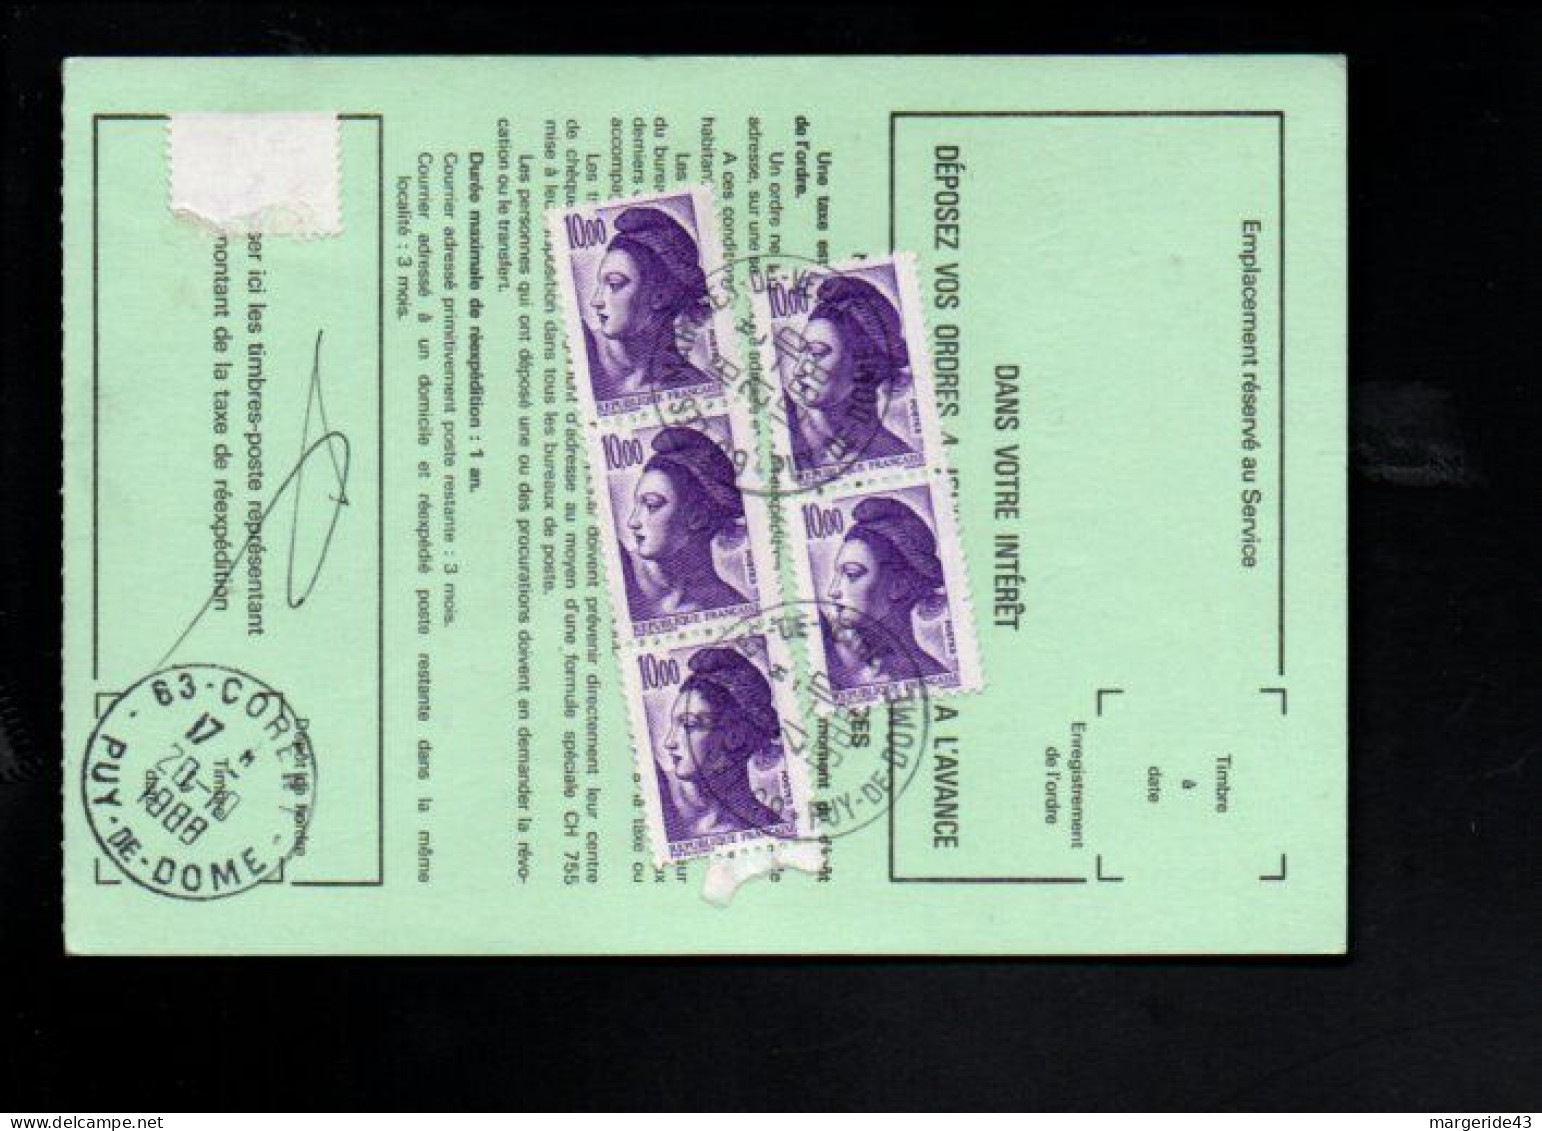 AFFRANCHISSEMENT COMPOSE DE LIBERTE DE GANDON SUR AVIS DE REEXPEDITION DE CORENT PUY DE DOME 1988 - Postal Rates